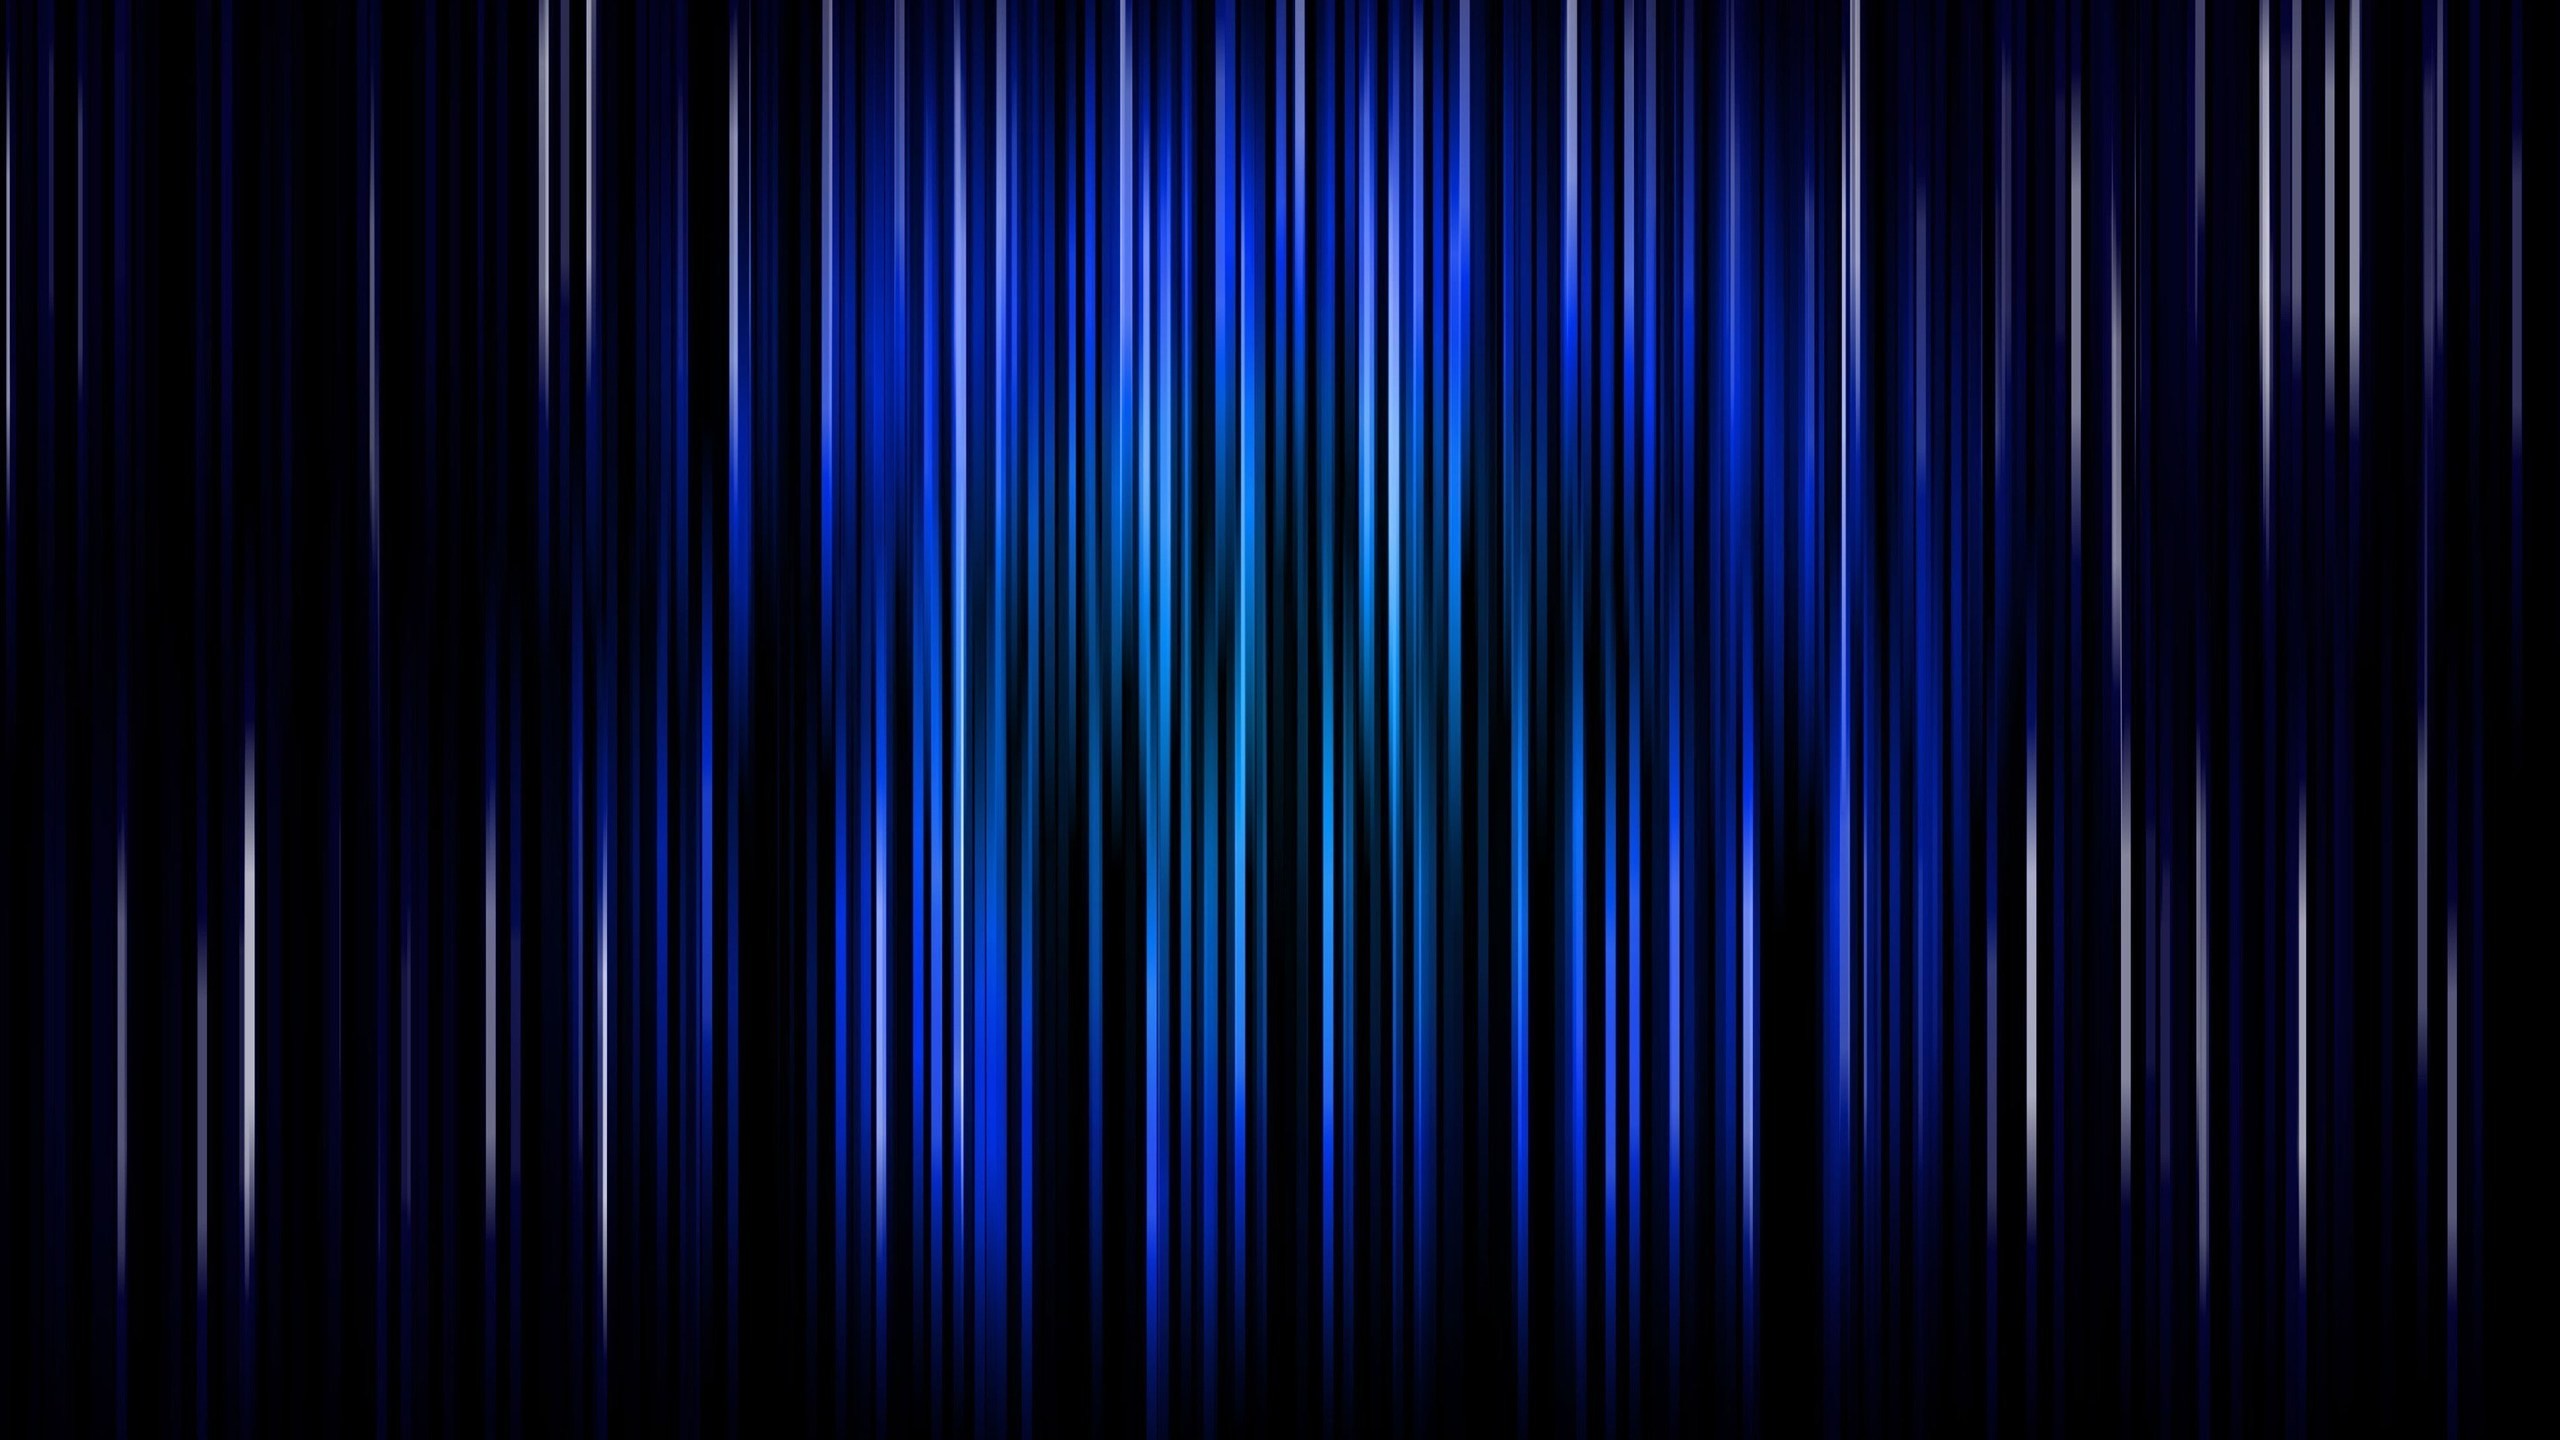 carta da parati pixel art,blu,nero,blu elettrico,viola,blu cobalto